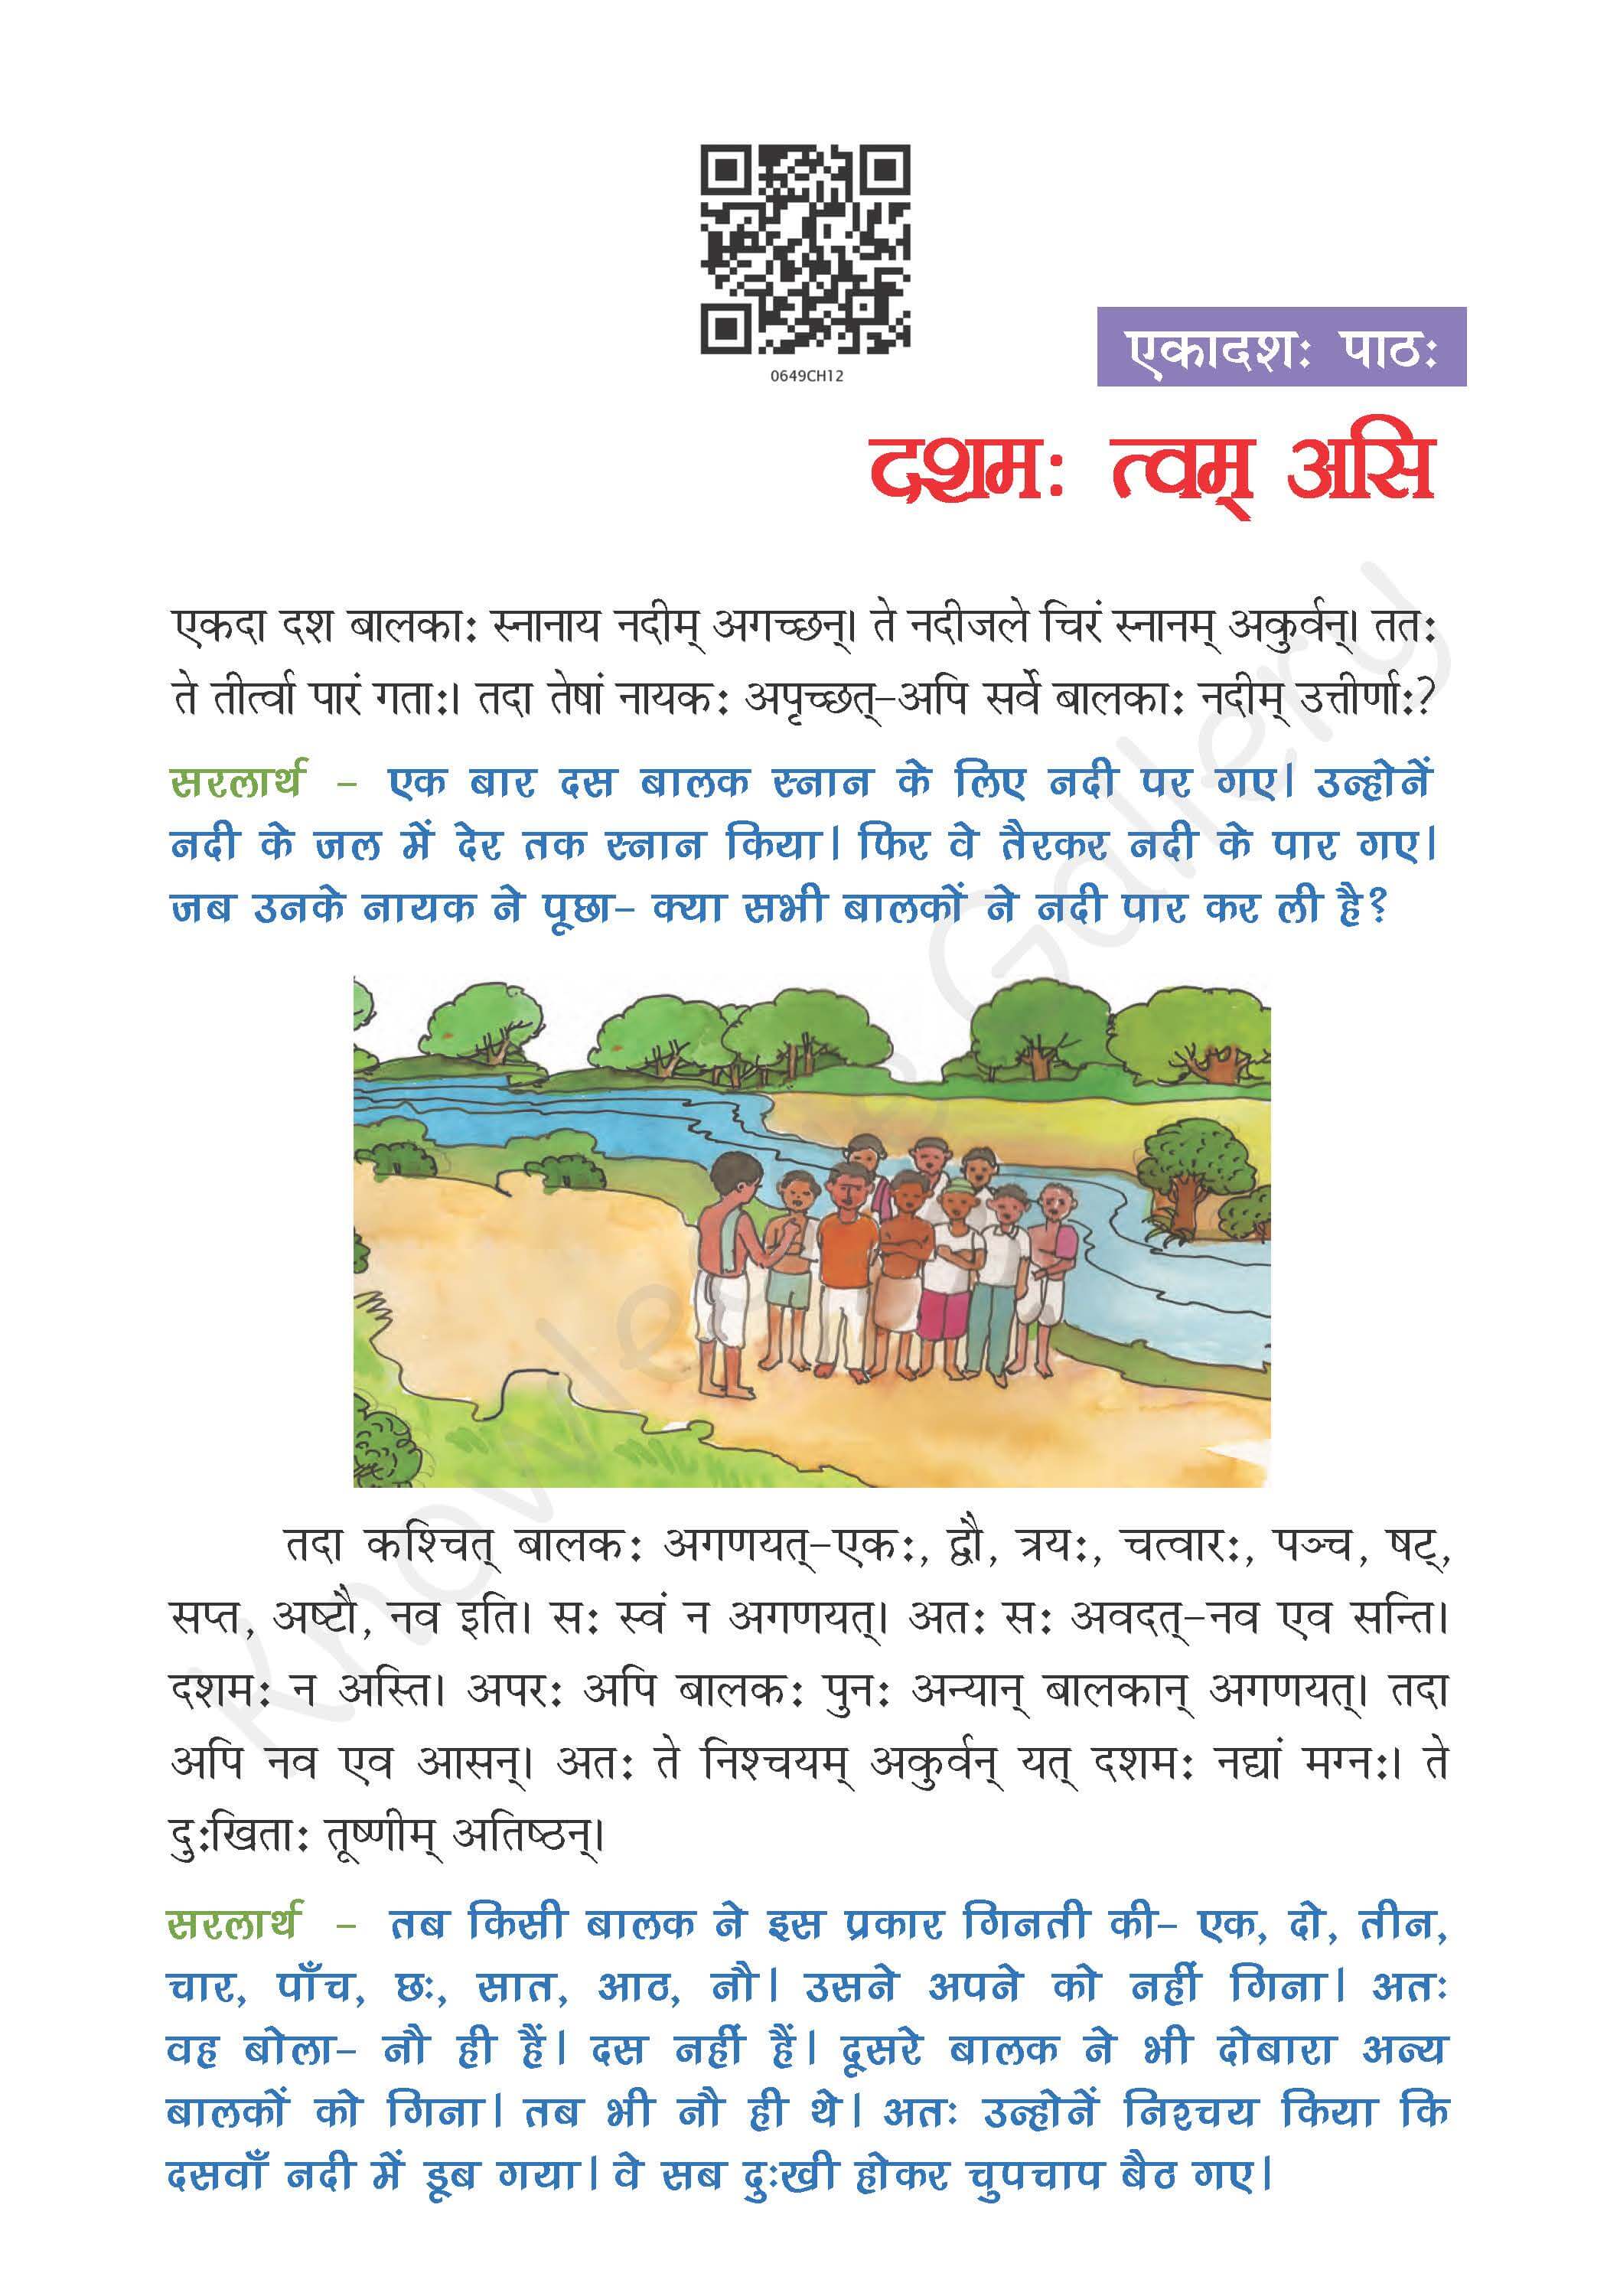 NCERT Solution For Class 6 Sanskrit Chapter 11 part 1